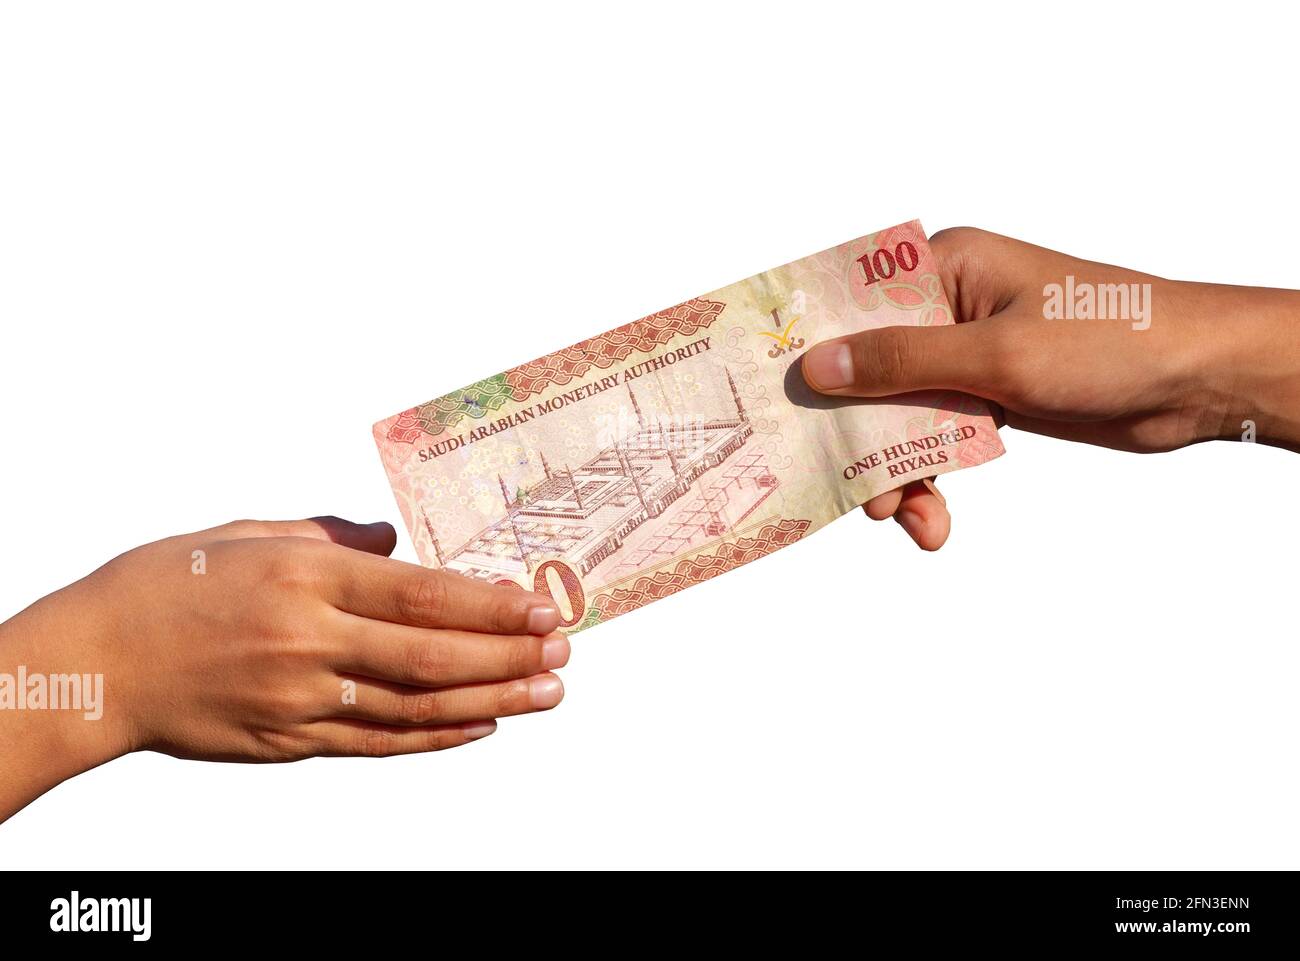 Mano dei bambini asiatici con 100 Riyal, la valuta dell'Arabia Saudita, concetto di dare, carità, Eid Mubarak. Messa a fuoco selezionata e isolata sulla parte posteriore bianca Foto Stock